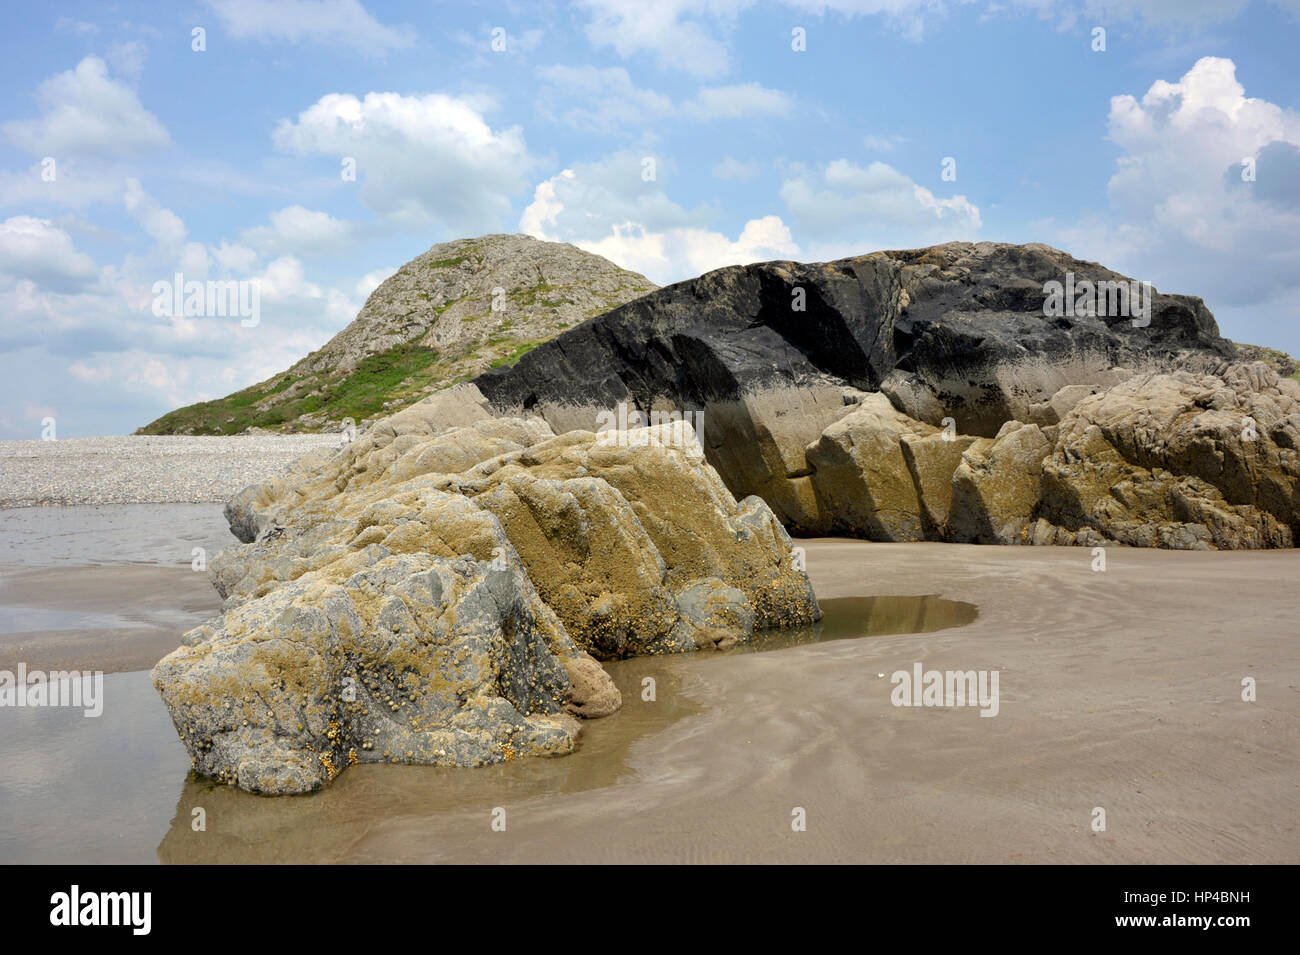 Landzunge Felsen im Black Rock Sands Beach in der Nähe von der walisischen Dorf von Morfa Bychan, Pothmadog, Gwynedd, Nordwales. VEREINIGTES KÖNIGREICH. Stockfoto